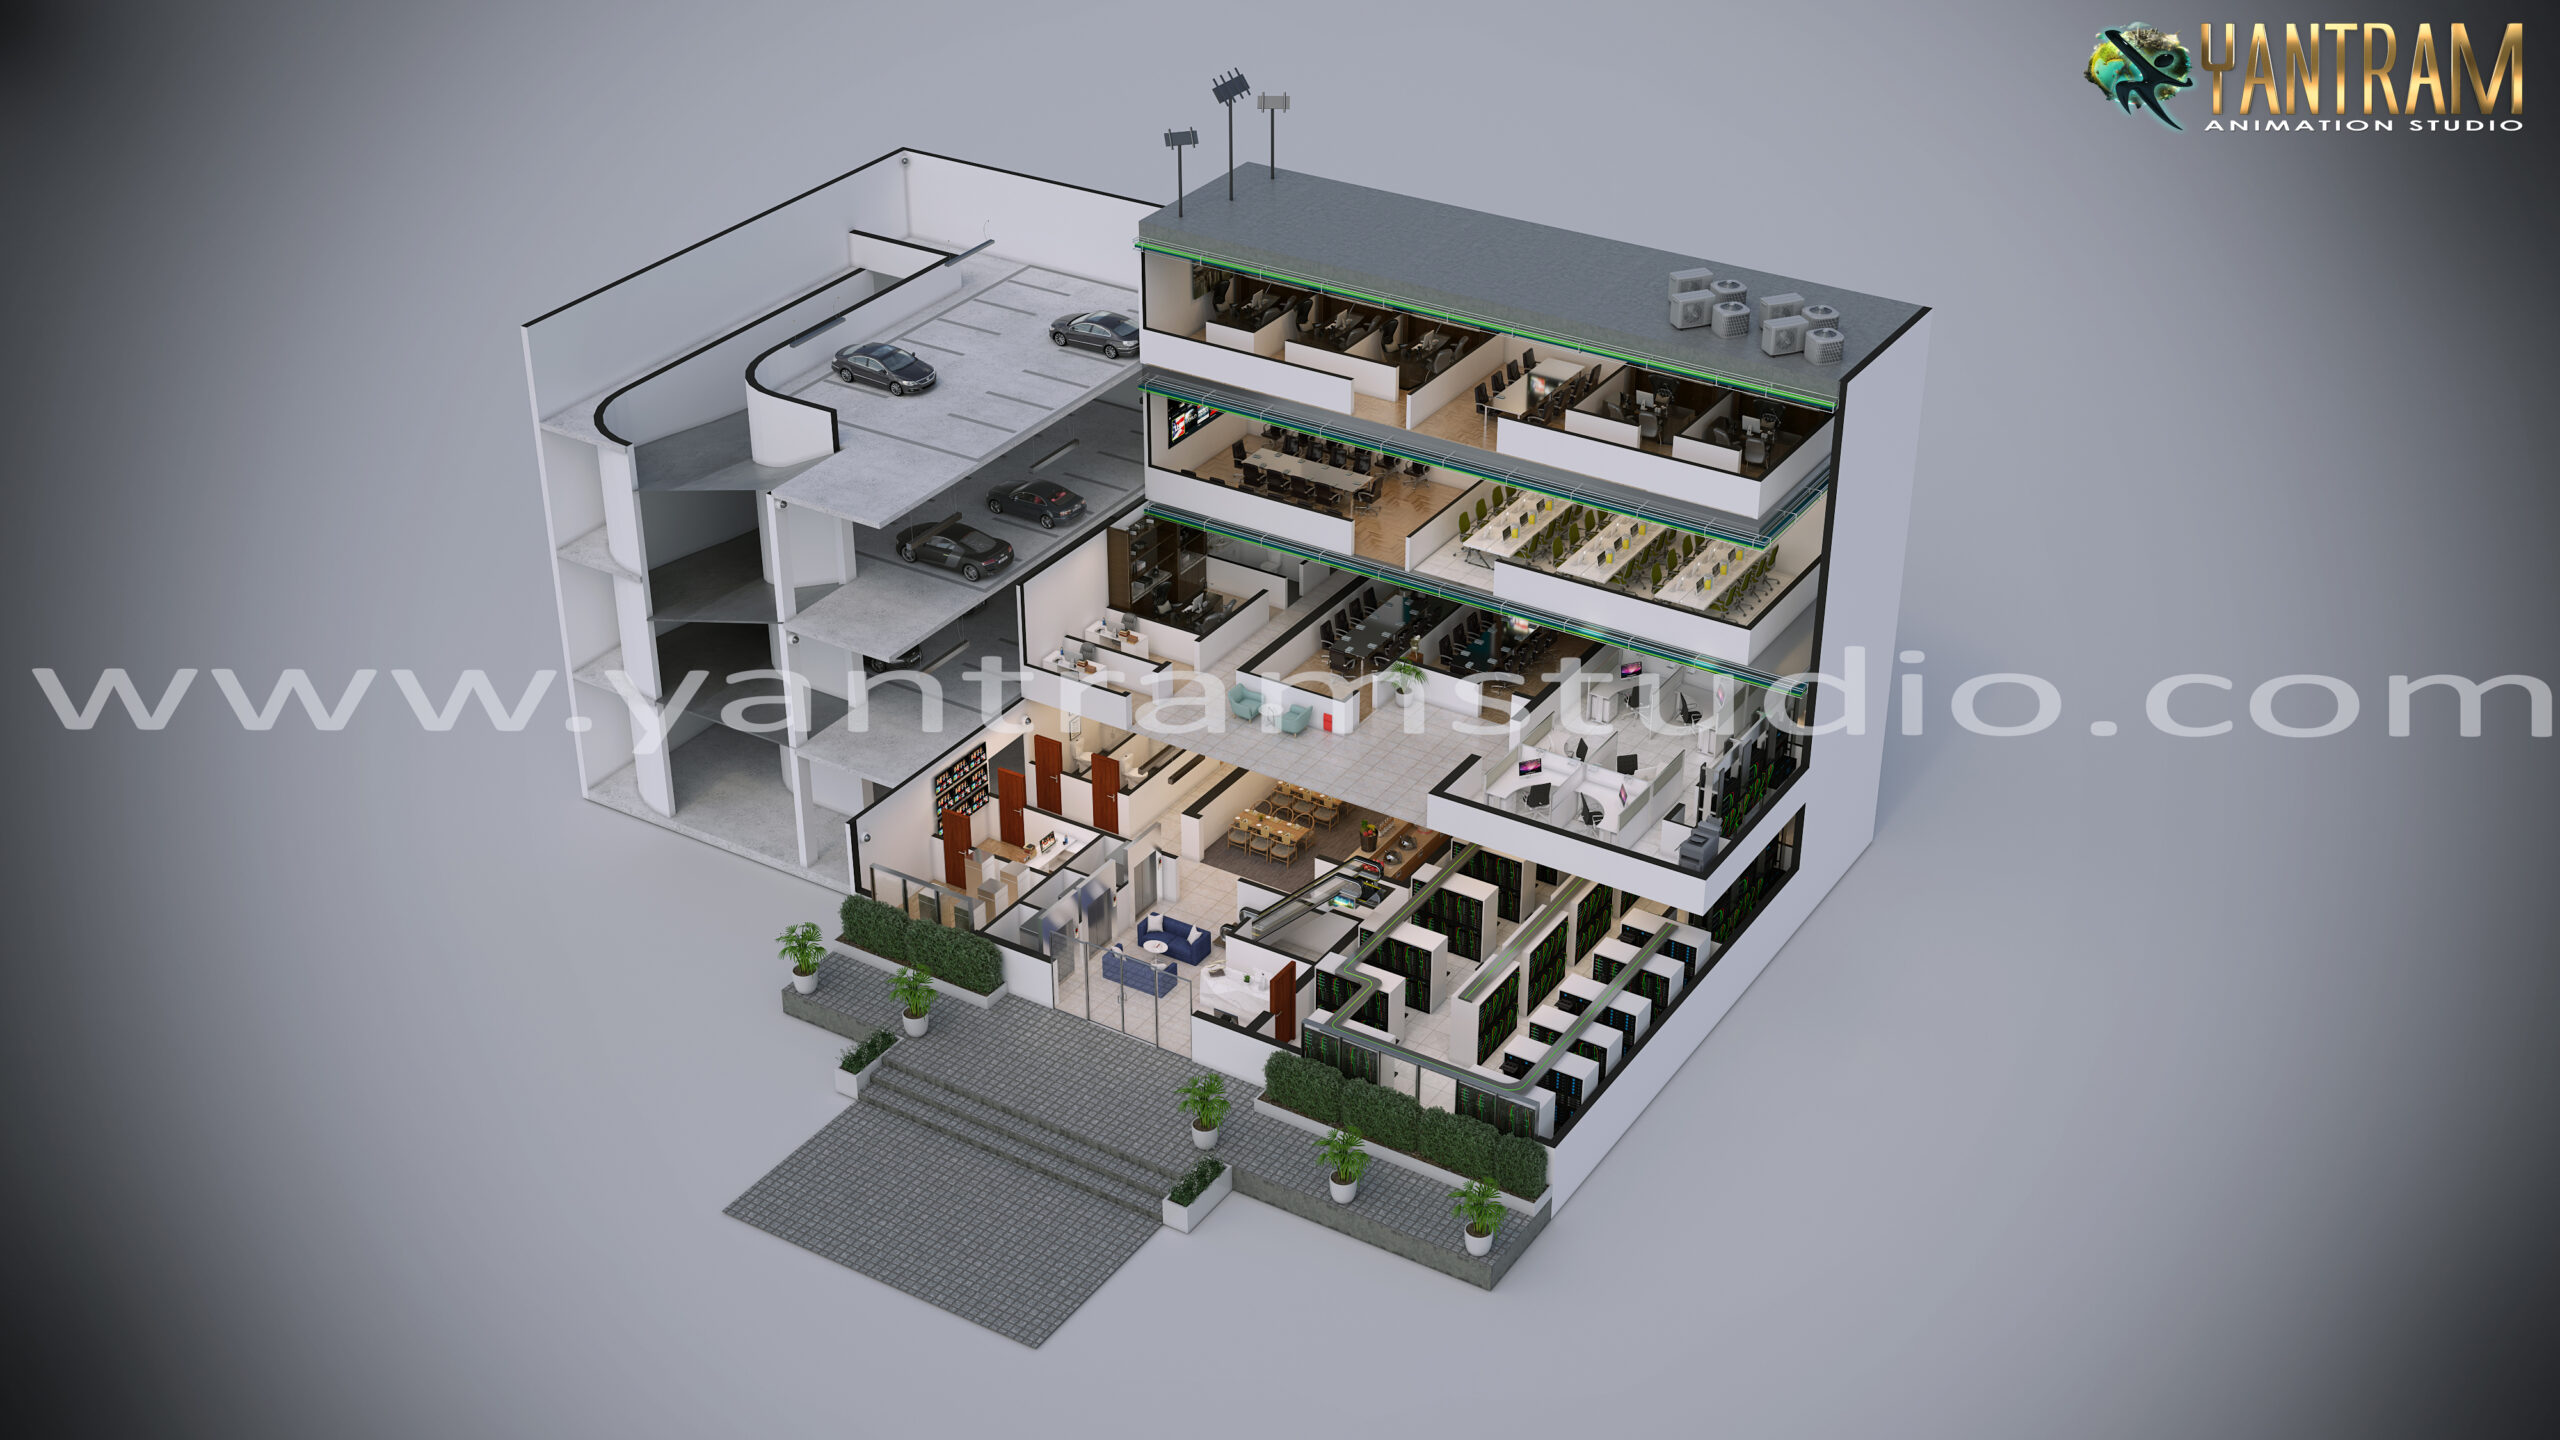 3D Floor Plan of Commercial Building by Yantram 3d Floor Plan Creator, Denton, Texas